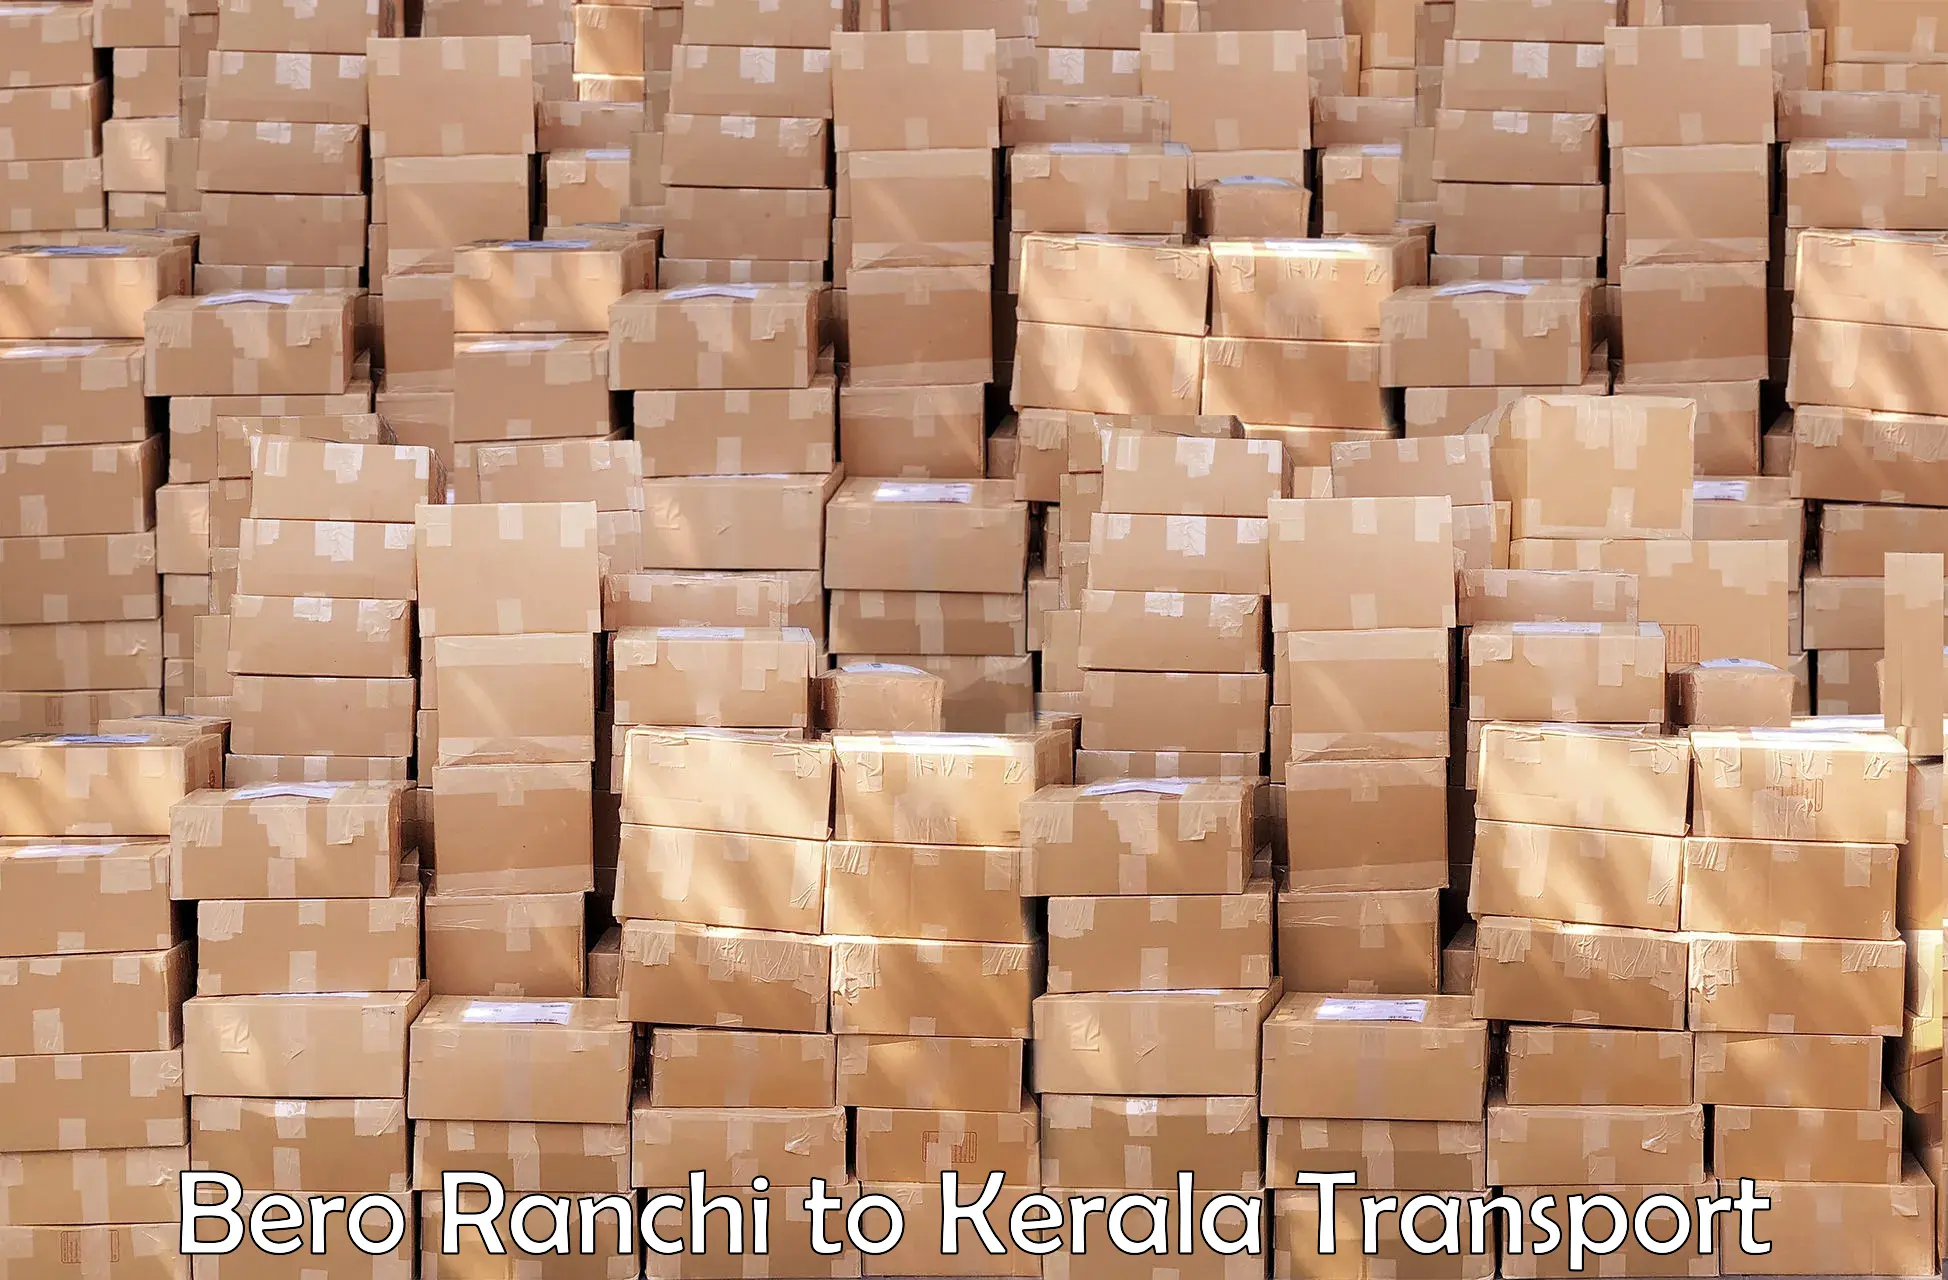 Shipping partner Bero Ranchi to Cherthala